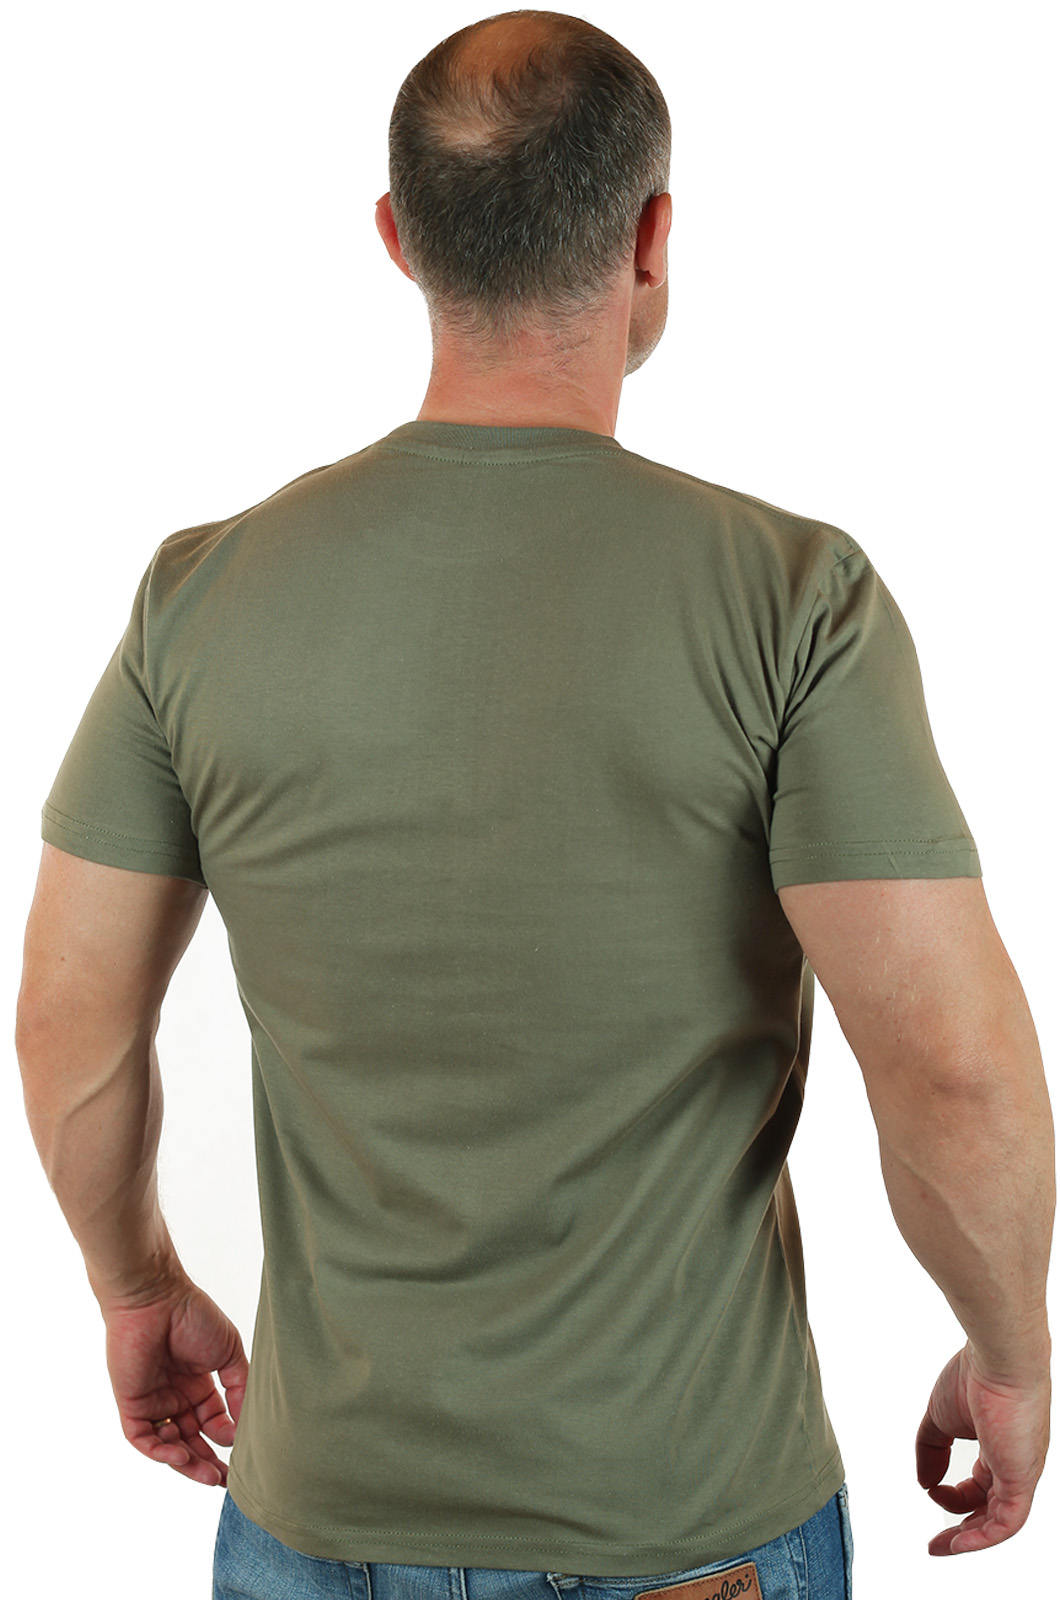 Купить крутую мужскую футболку Спецназ онлайн выгодно